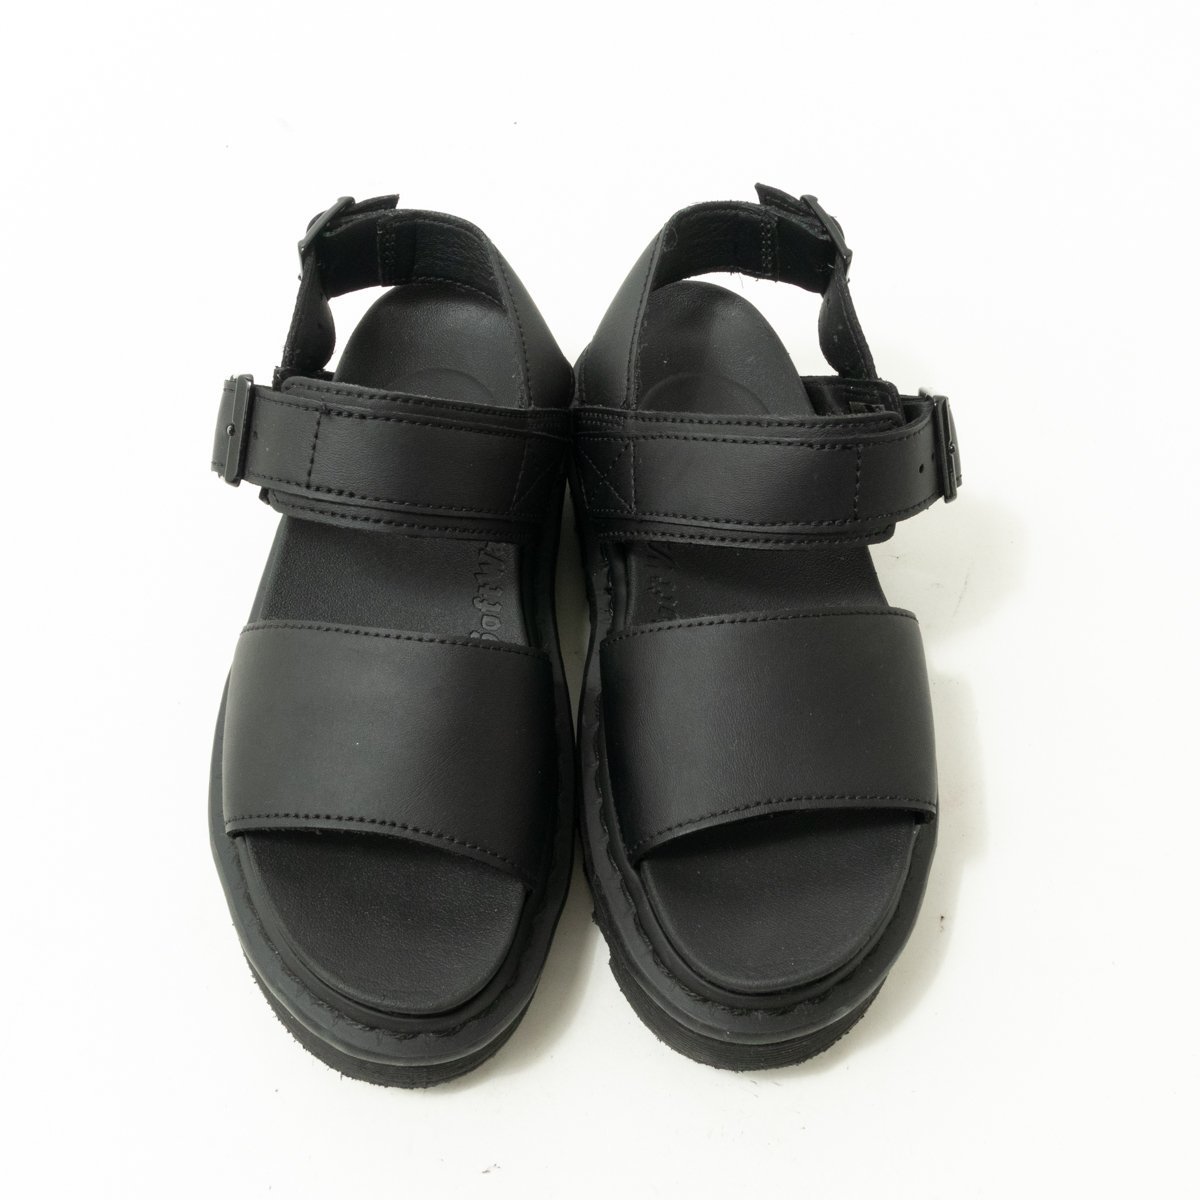 Dr.Martens ドクターマーチン サンダル ブラック 黒 UK3 22cm相当 レザー 本革 レディース シンプル カジュアル 靴下コーデ 太ベルト 靴_画像2